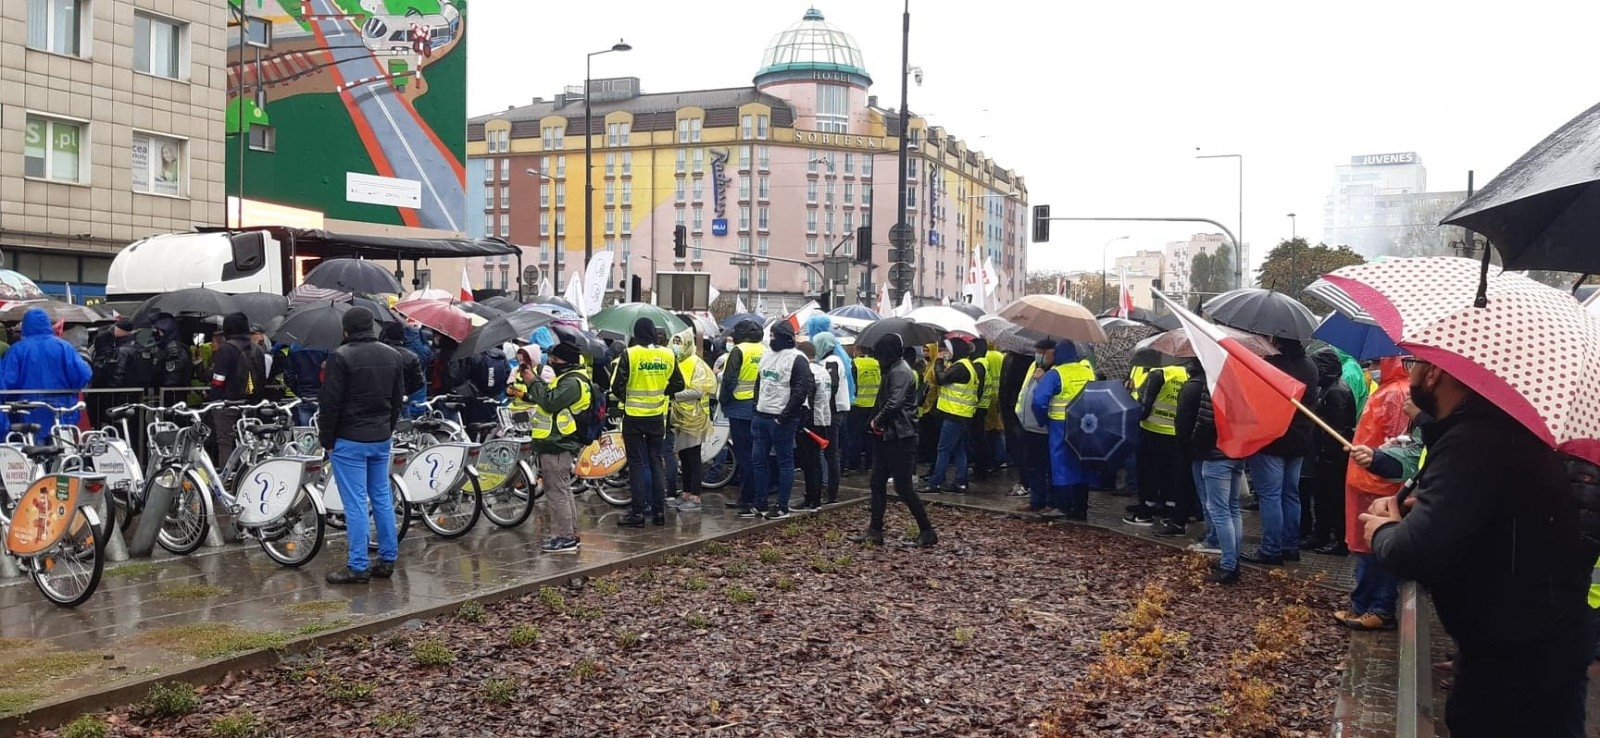  Rolnicy z powiatu jarocińskiego protestują w deszczu w Warszawie [ZDJĘCIA]    - Zdjęcie główne